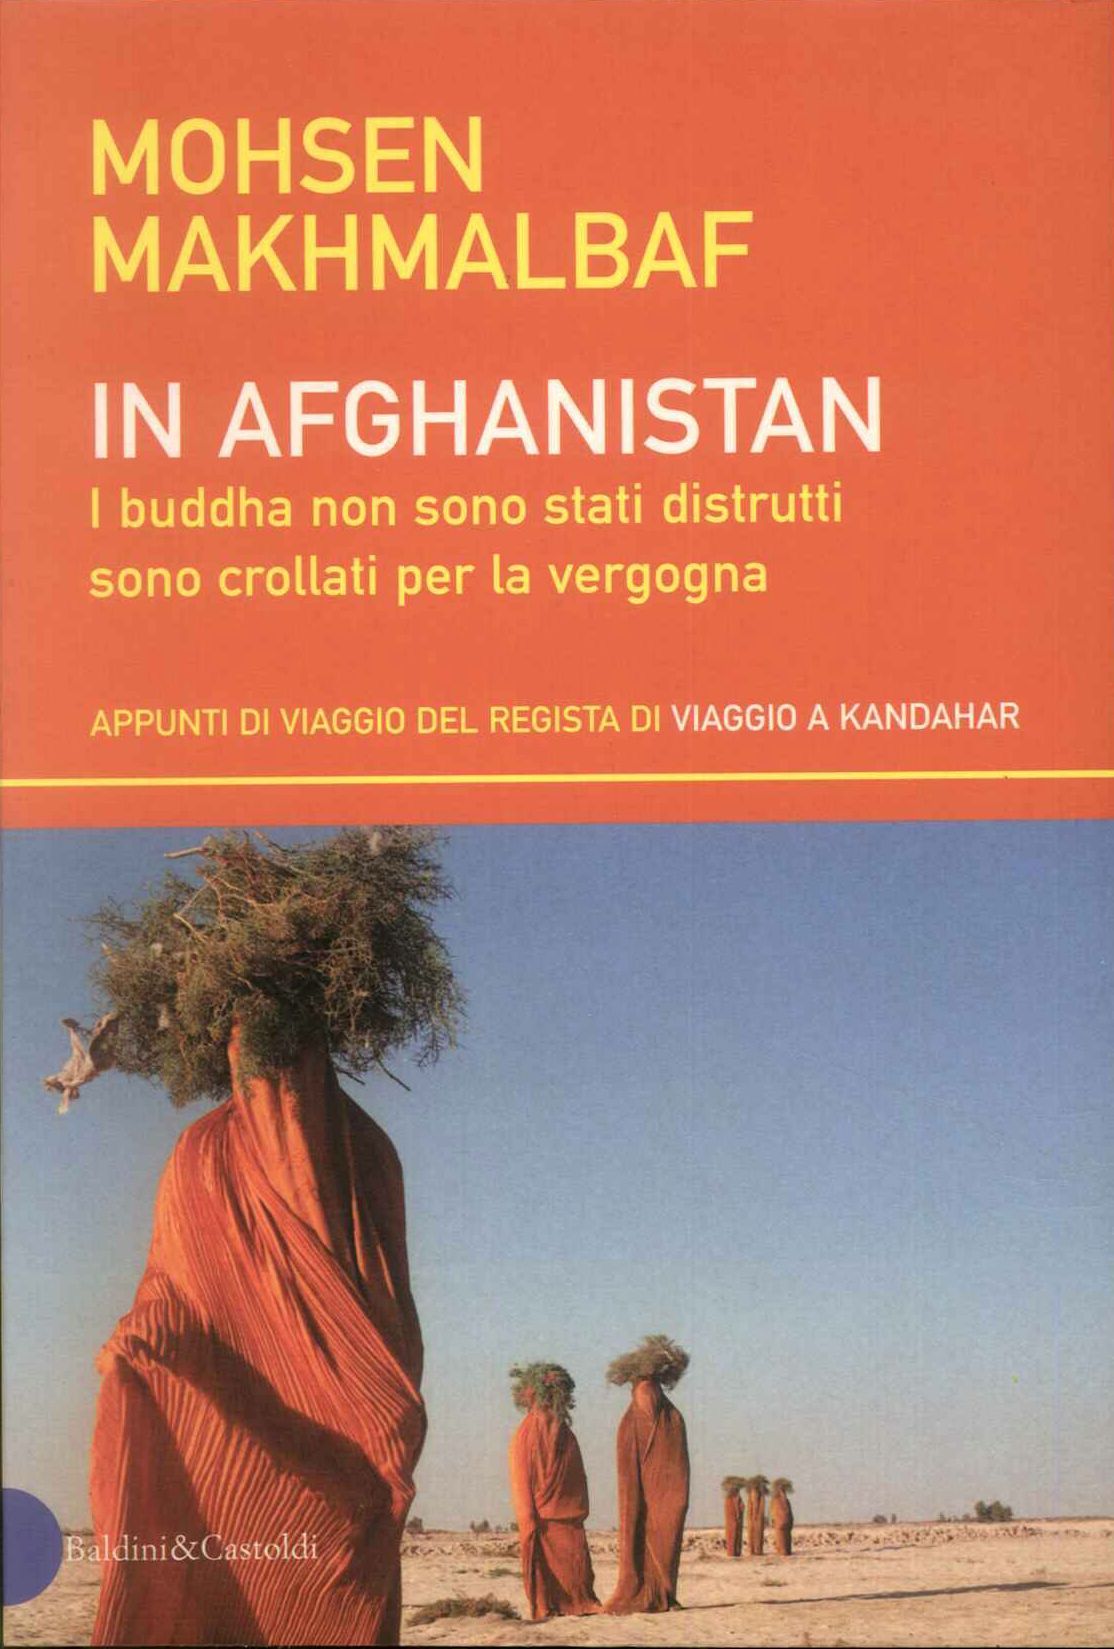 In Afghanistan i buddha non sono stati distrutti sono crollati p